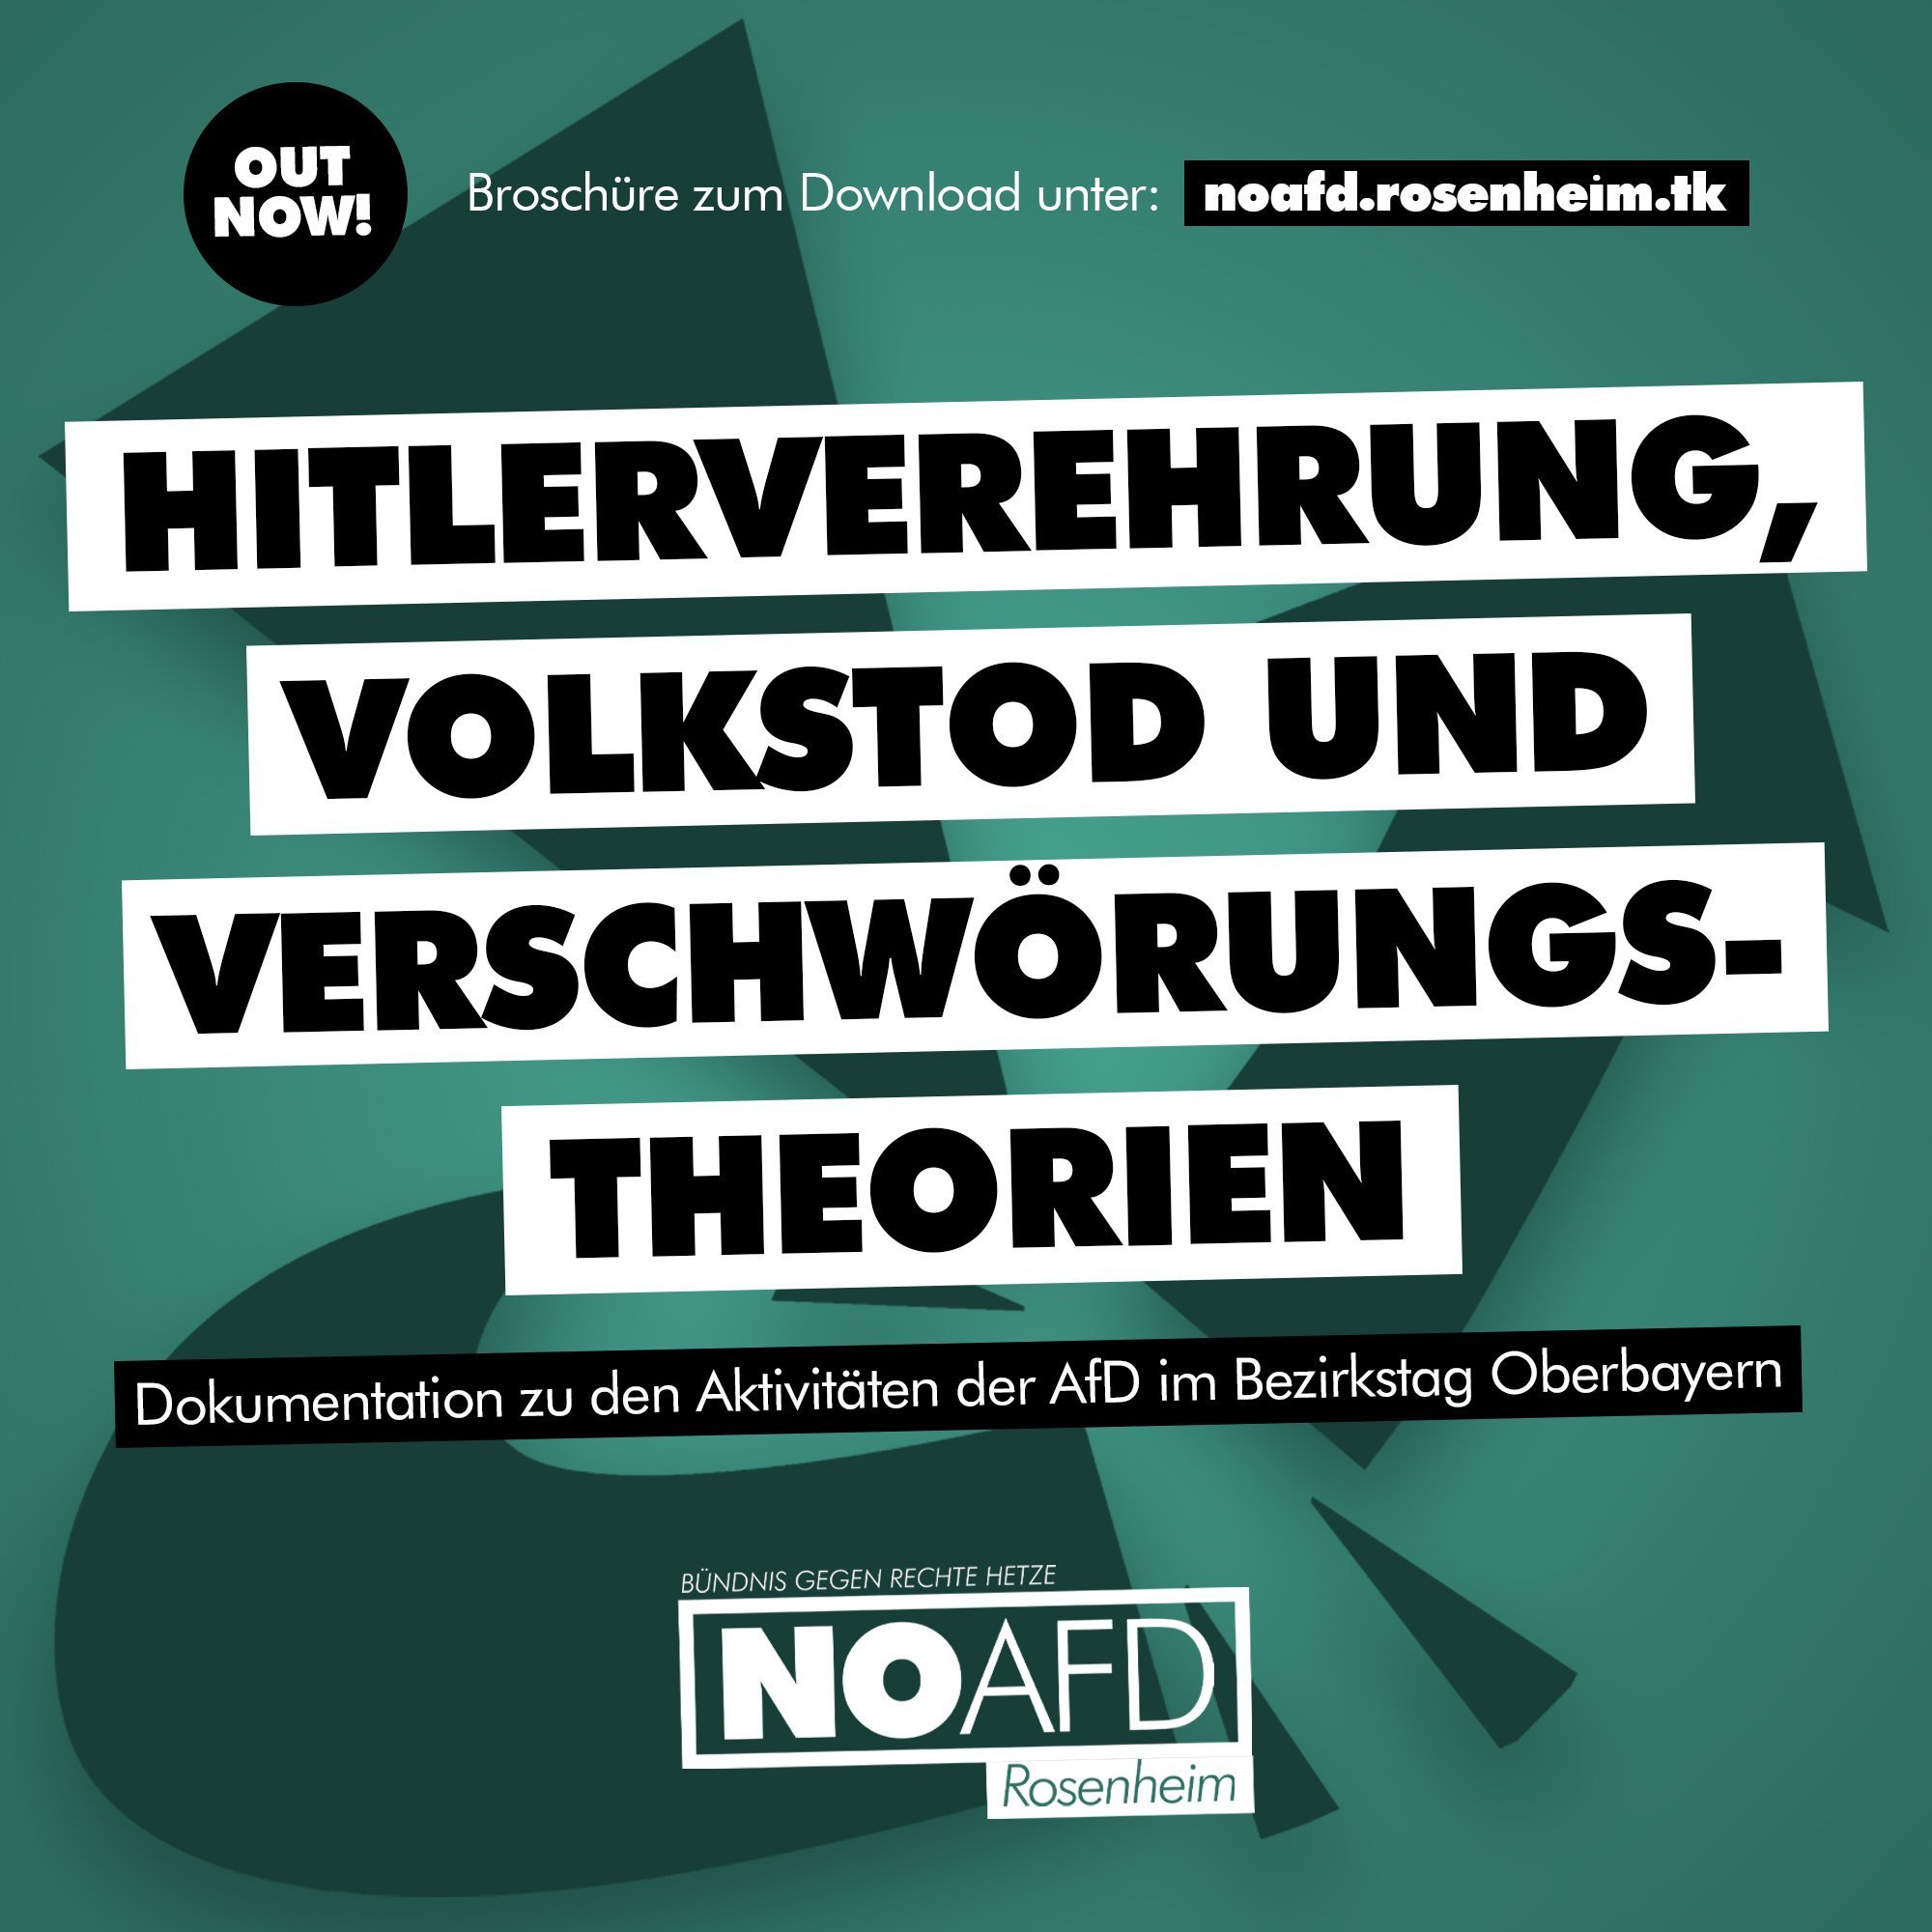 Broschüre zur AfD im Bezirkstag Oberbayern veröffentlicht